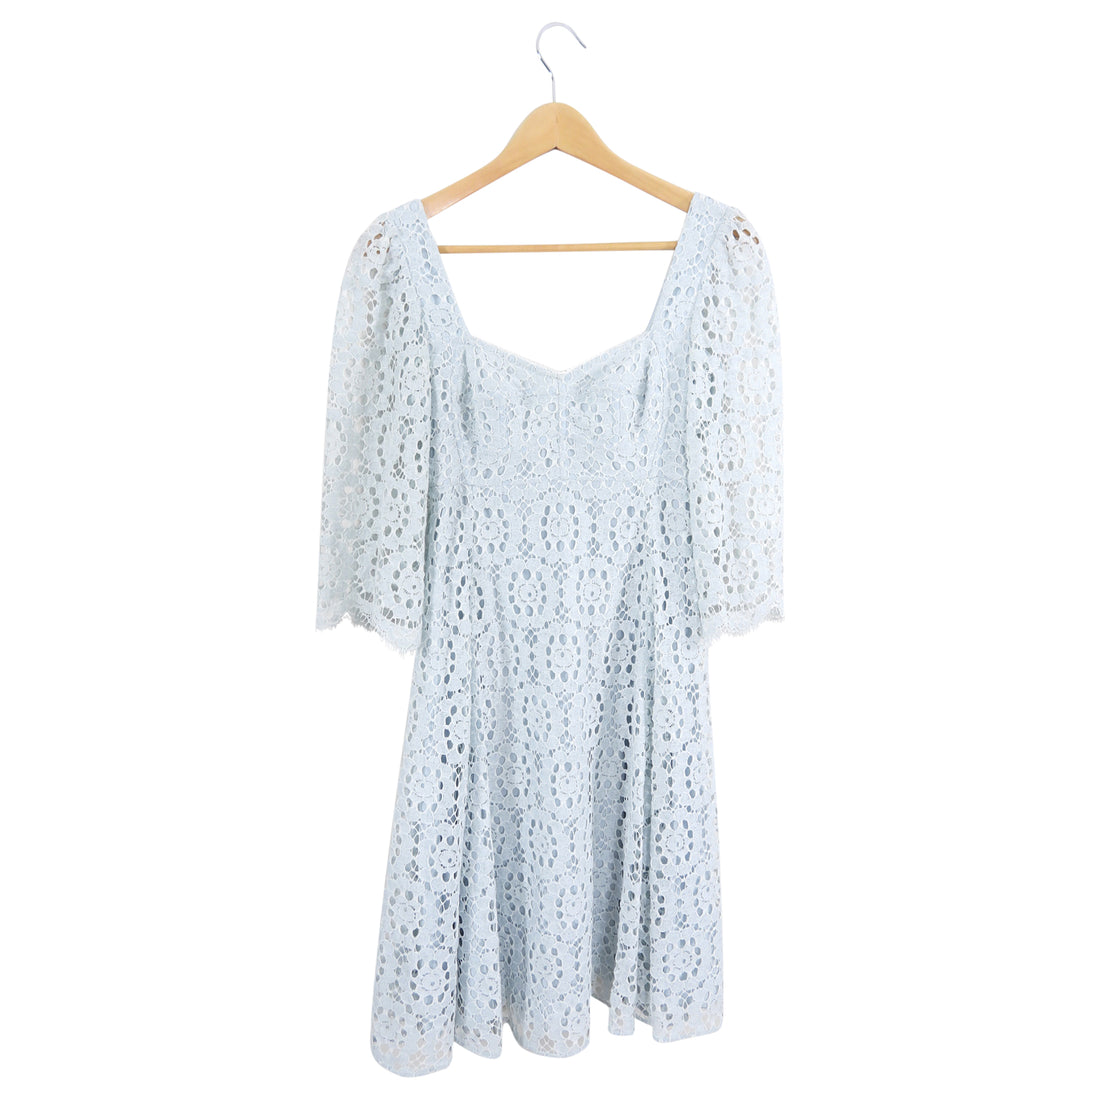 Dolce & Gabbana Light Blue Lace Dress - IT36 / USA 0 / XS – I MISS YOU  VINTAGE